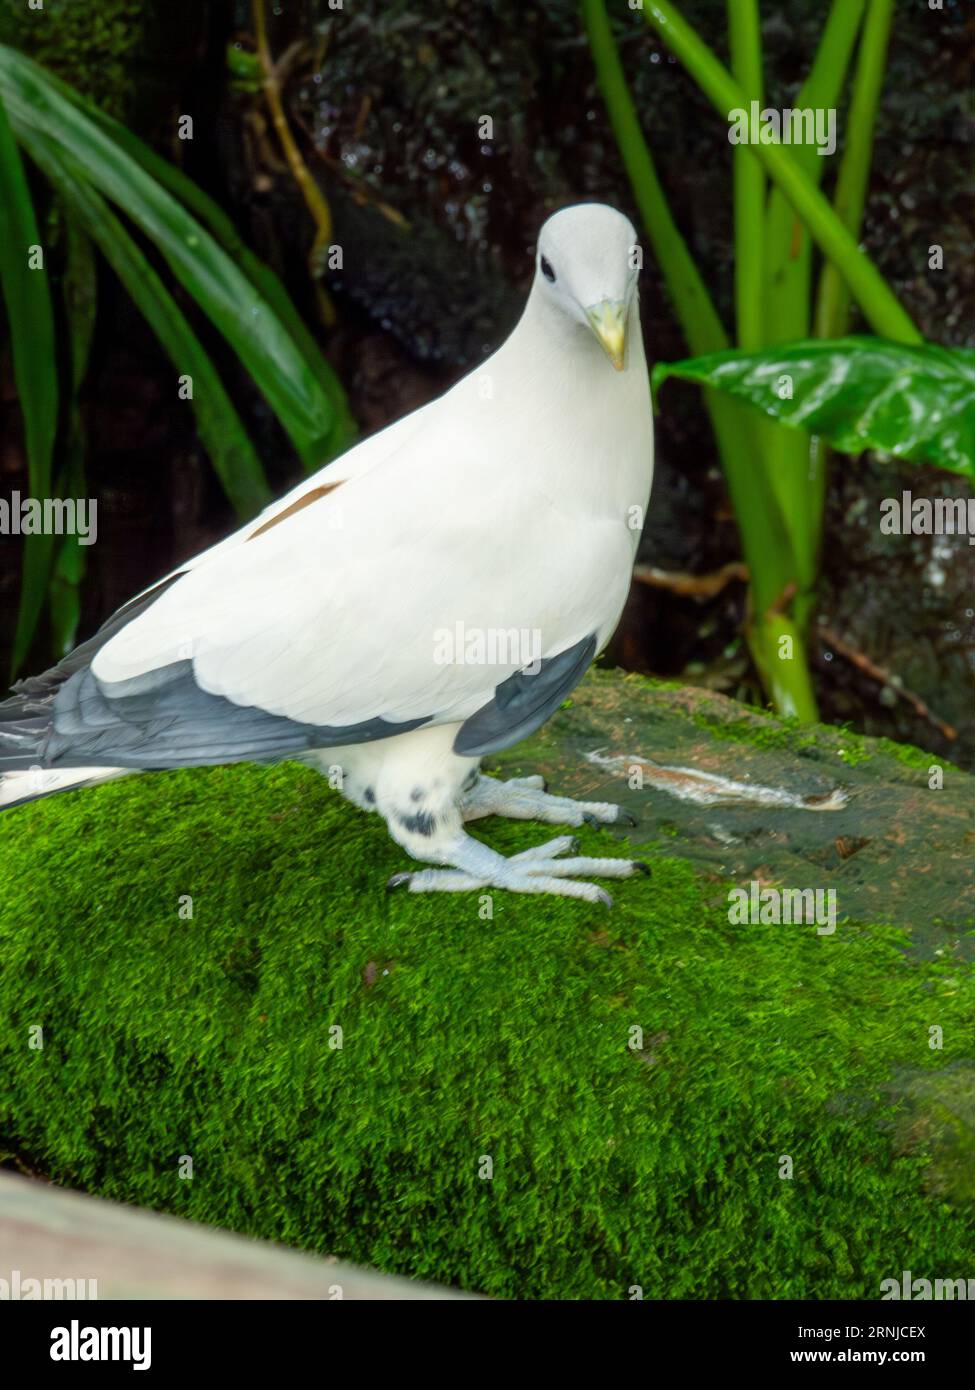 Torresian Imperial Pigeon, Ducula spilorrhoa, Muskattaube, Weiße Muskattaube, australische Rattentaube oder Torres Strait Pigeon, gefangen genommen. Stockfoto